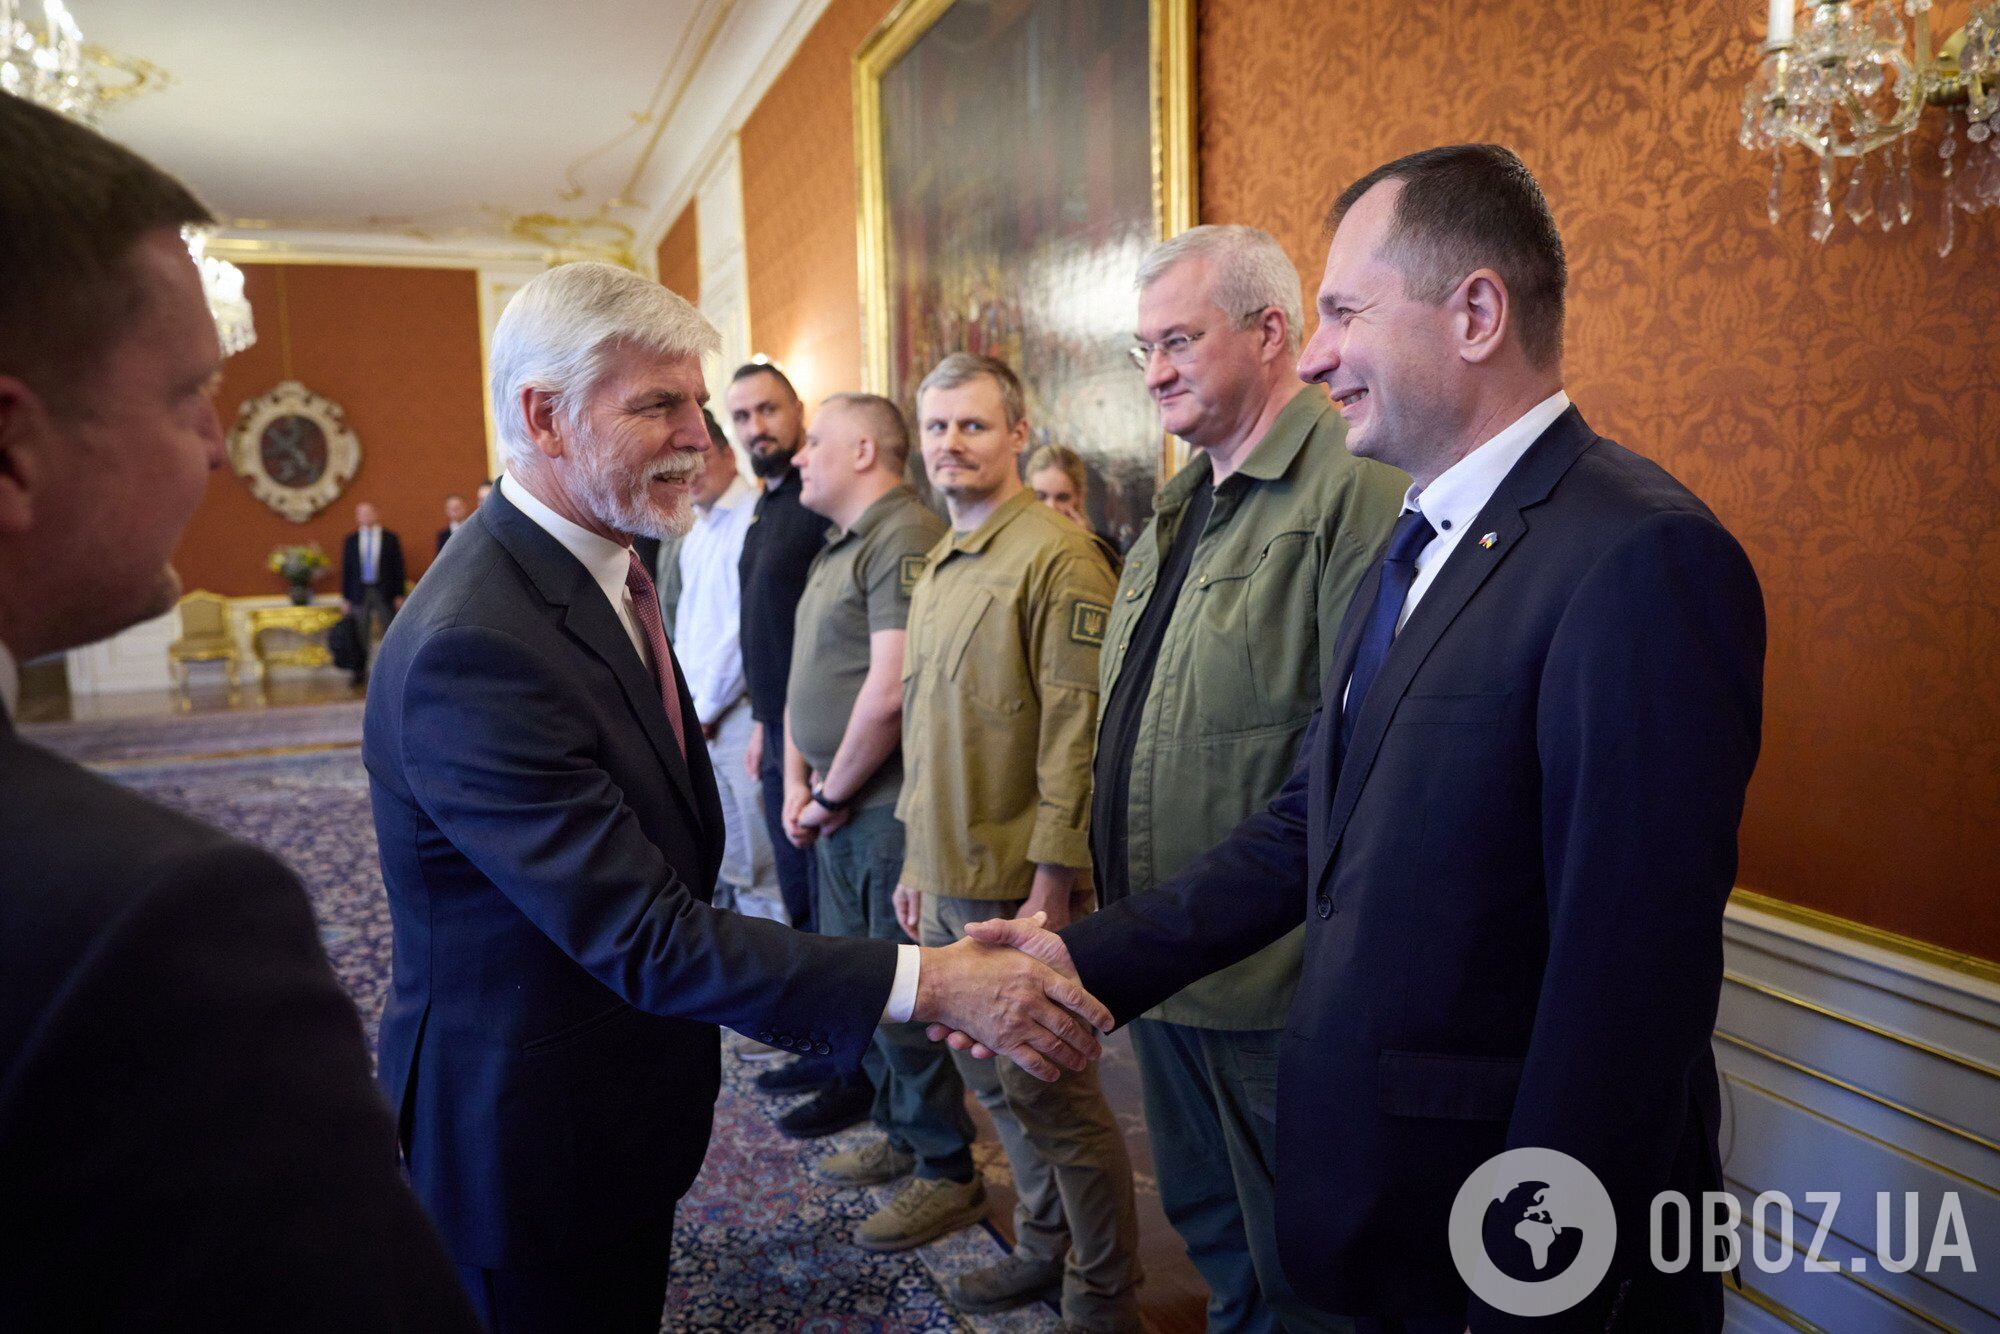 Зеленский совершил рабочий визит в Чехию: подробности поездки. Фото и видео